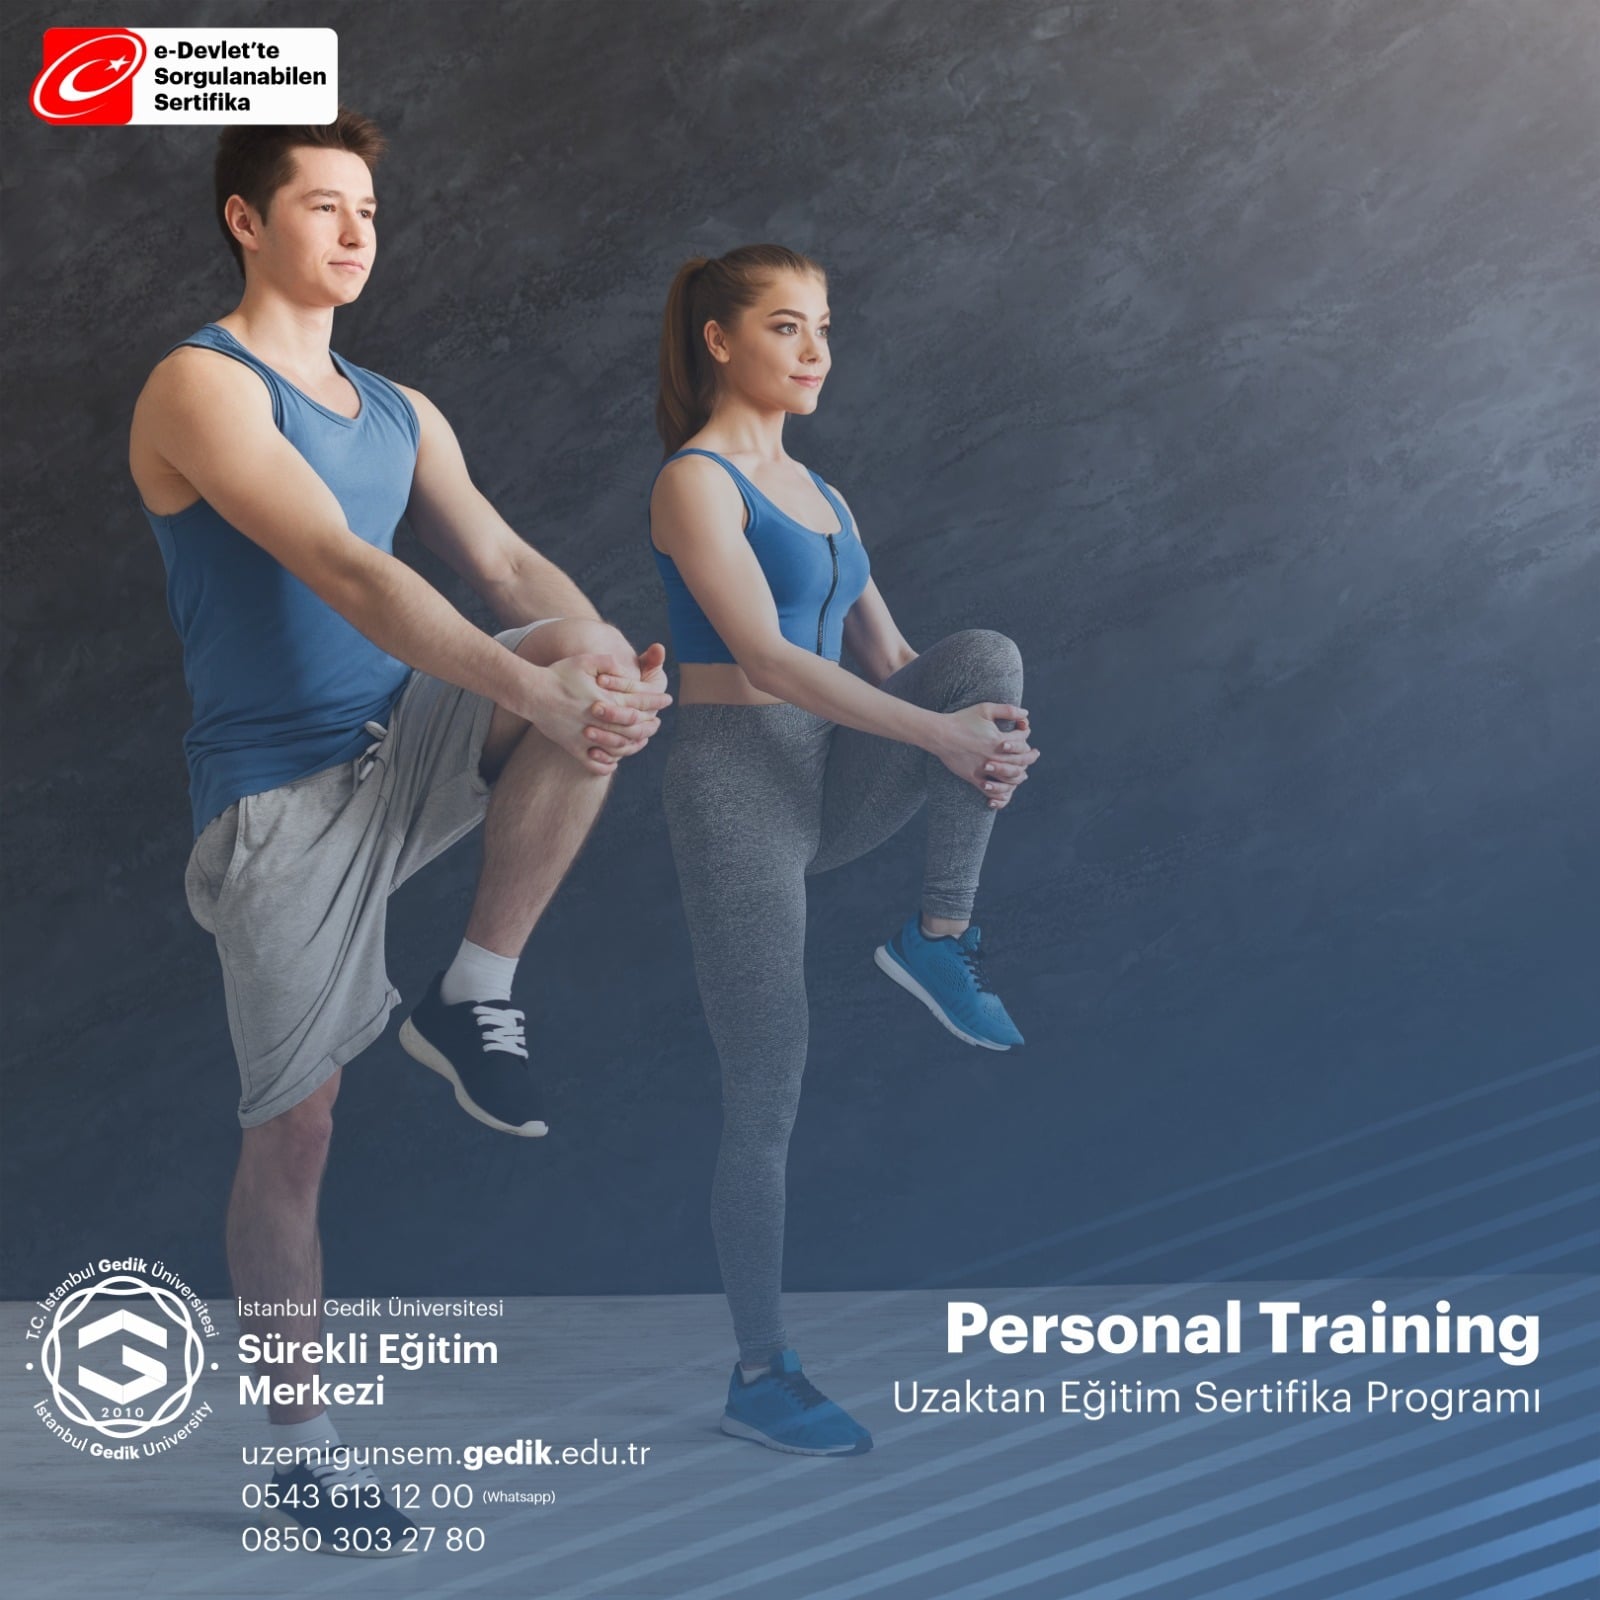 Personal Trainer, fitness alanda “Özel Antrenör" veya “Özel Spor Hocası/Eğitmeni" olarak adlandırılır. Bu eğitmenler alanda ihtiyaç duyulan gerekli belgelerini almak durumundadır.